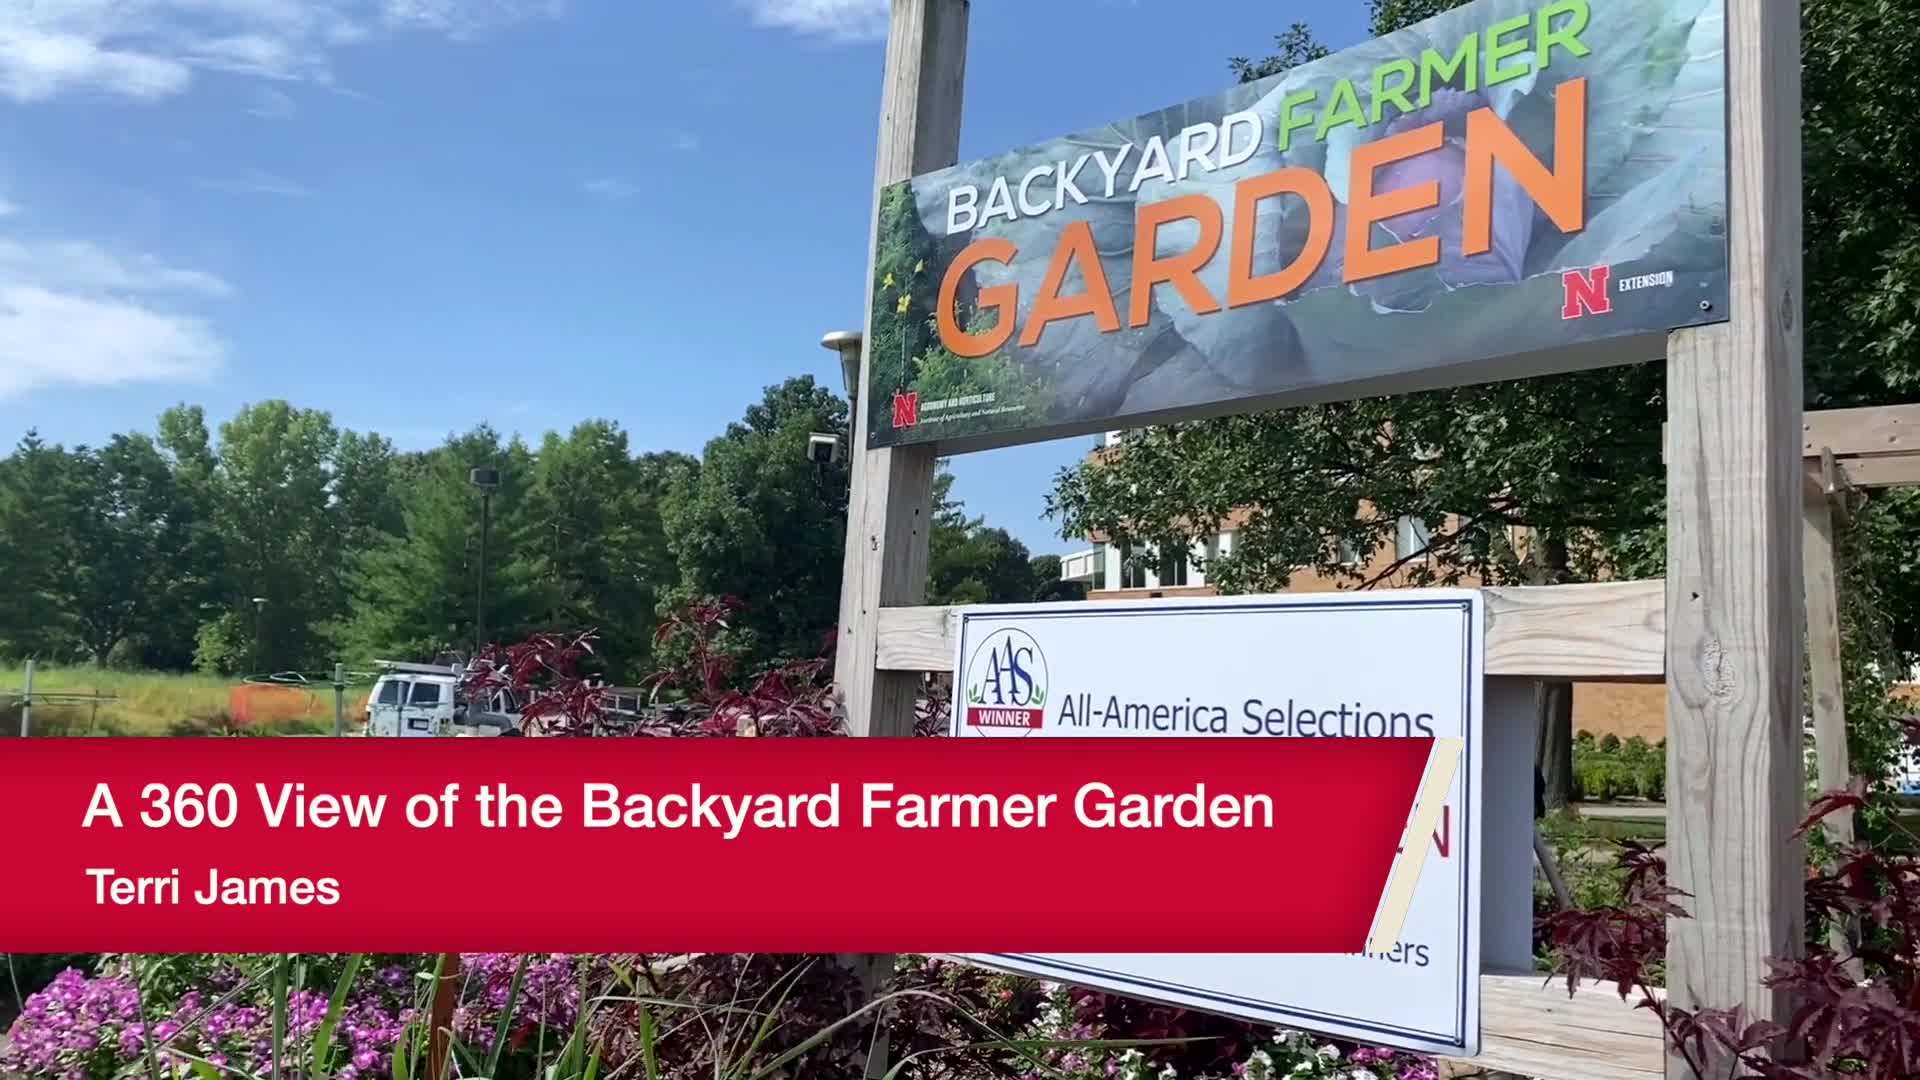 A 360 View of the Backyard Farmer Garden